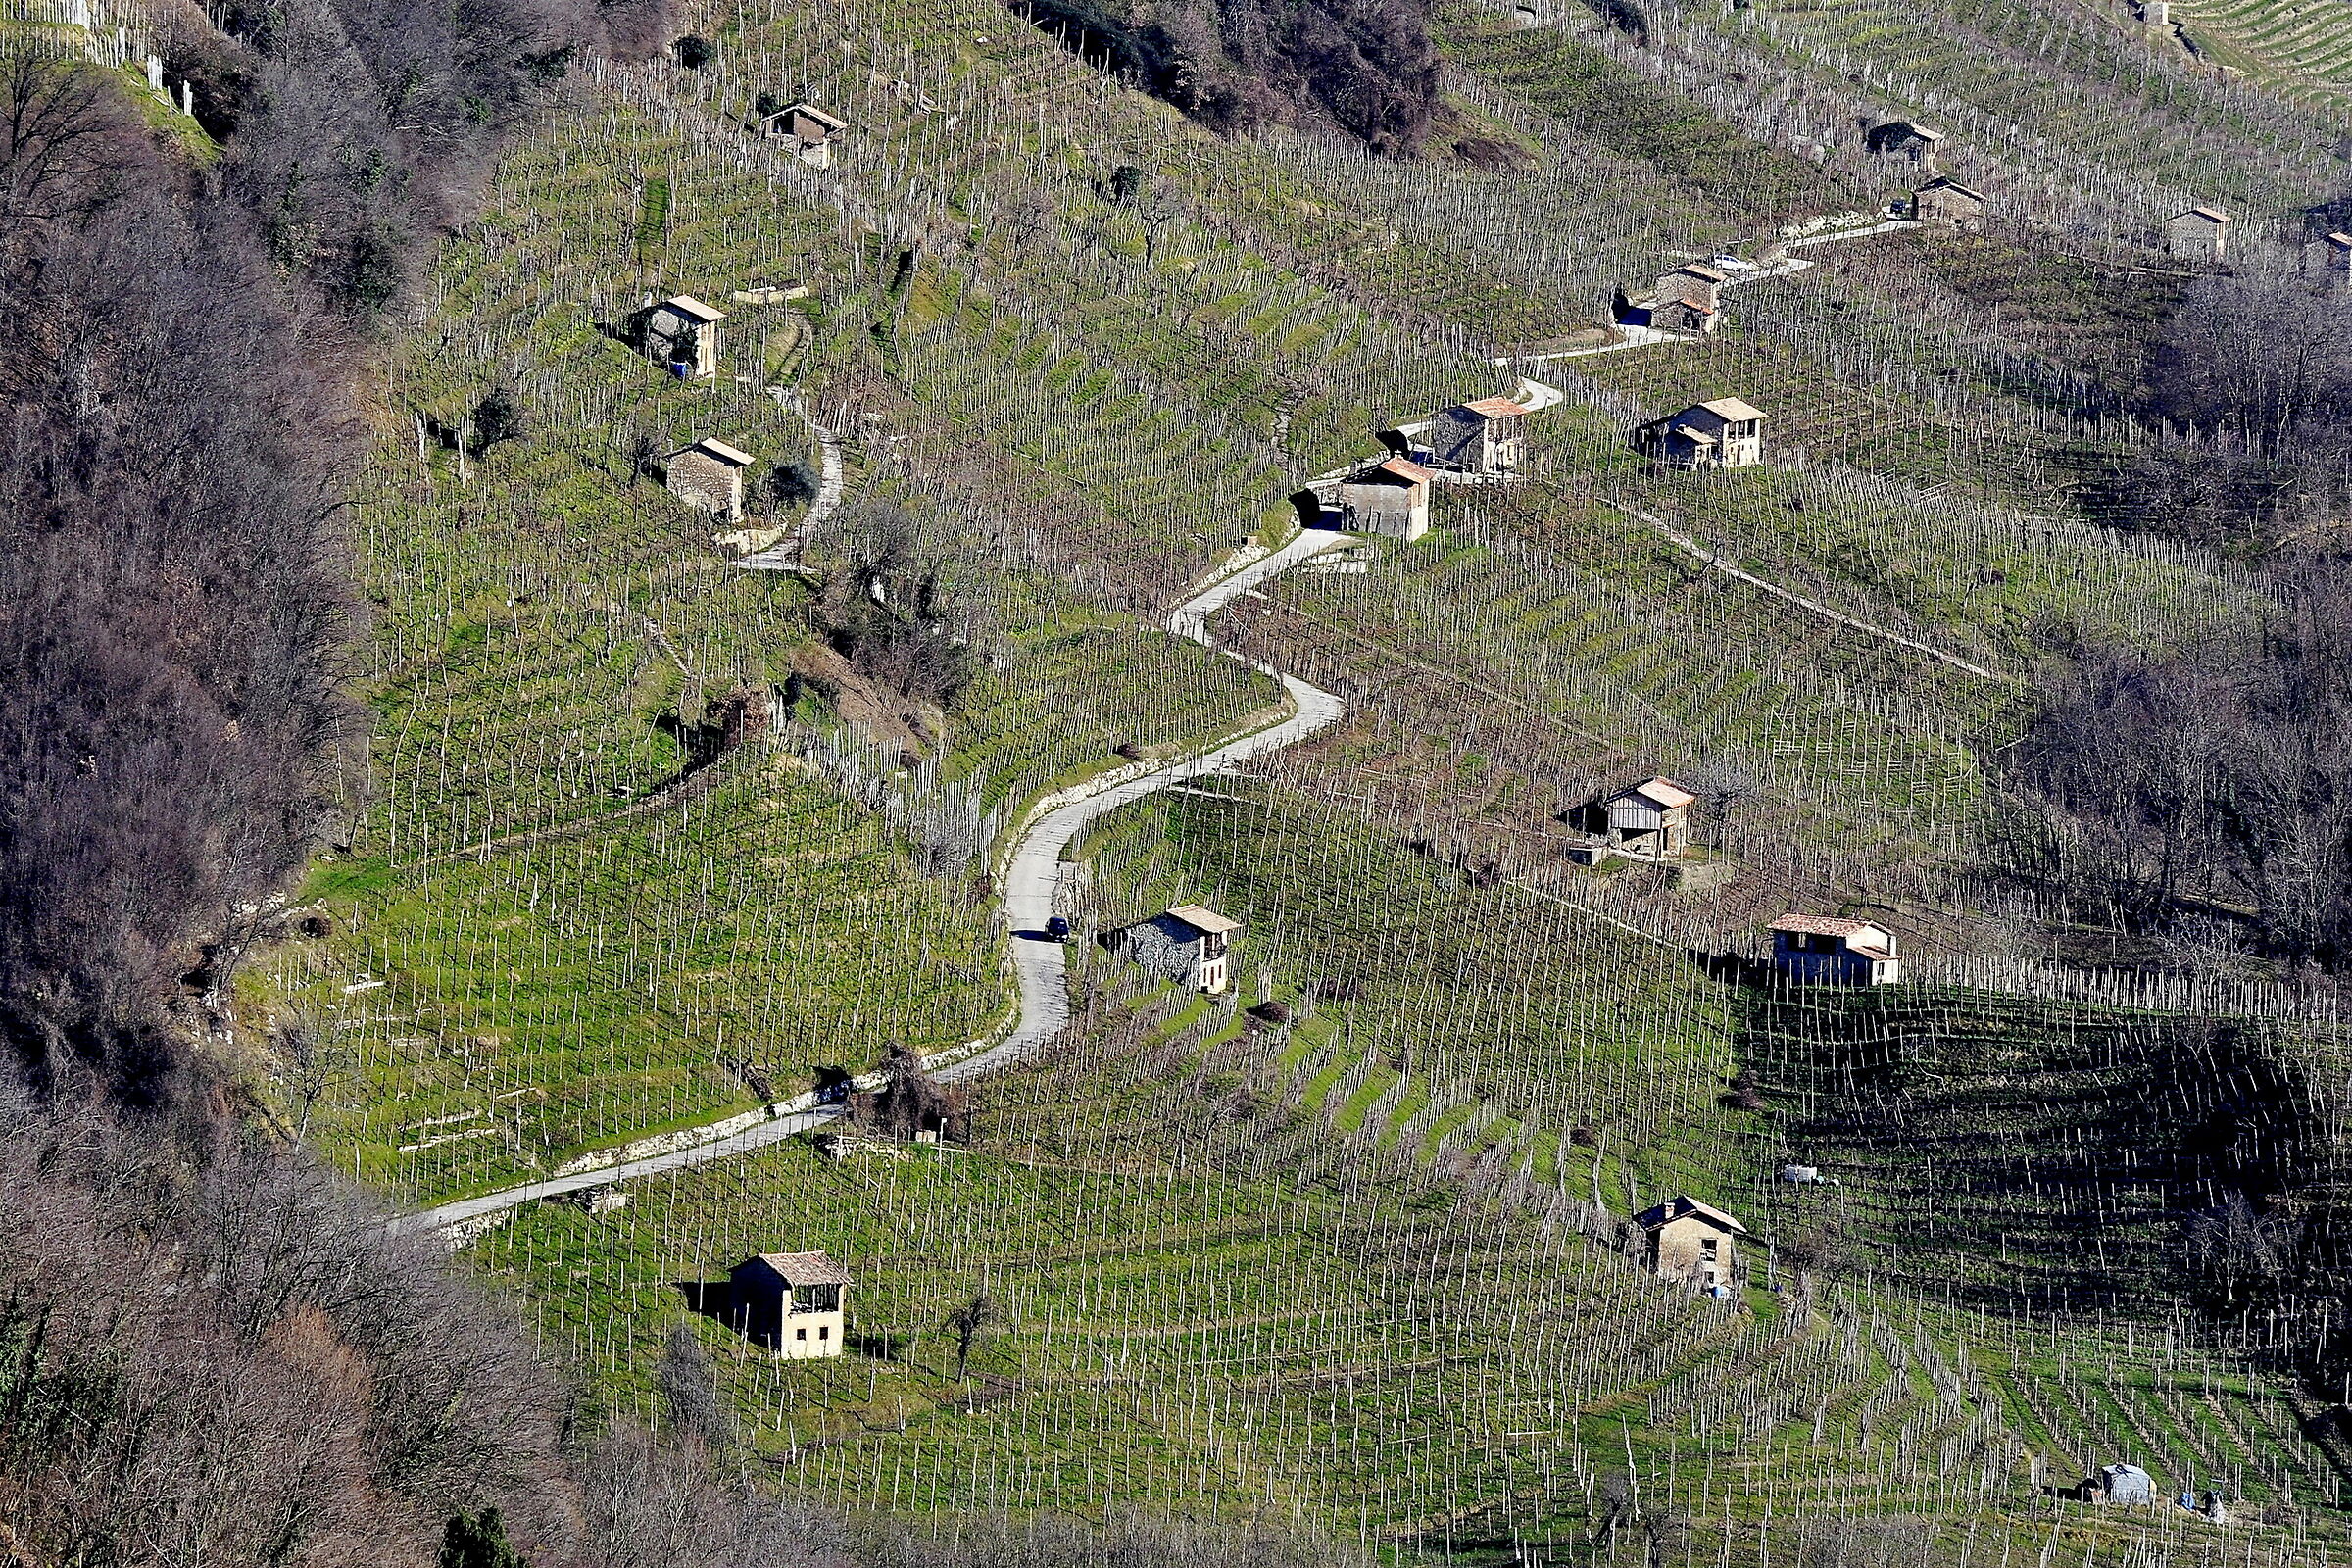 The Hills of Verdisio...